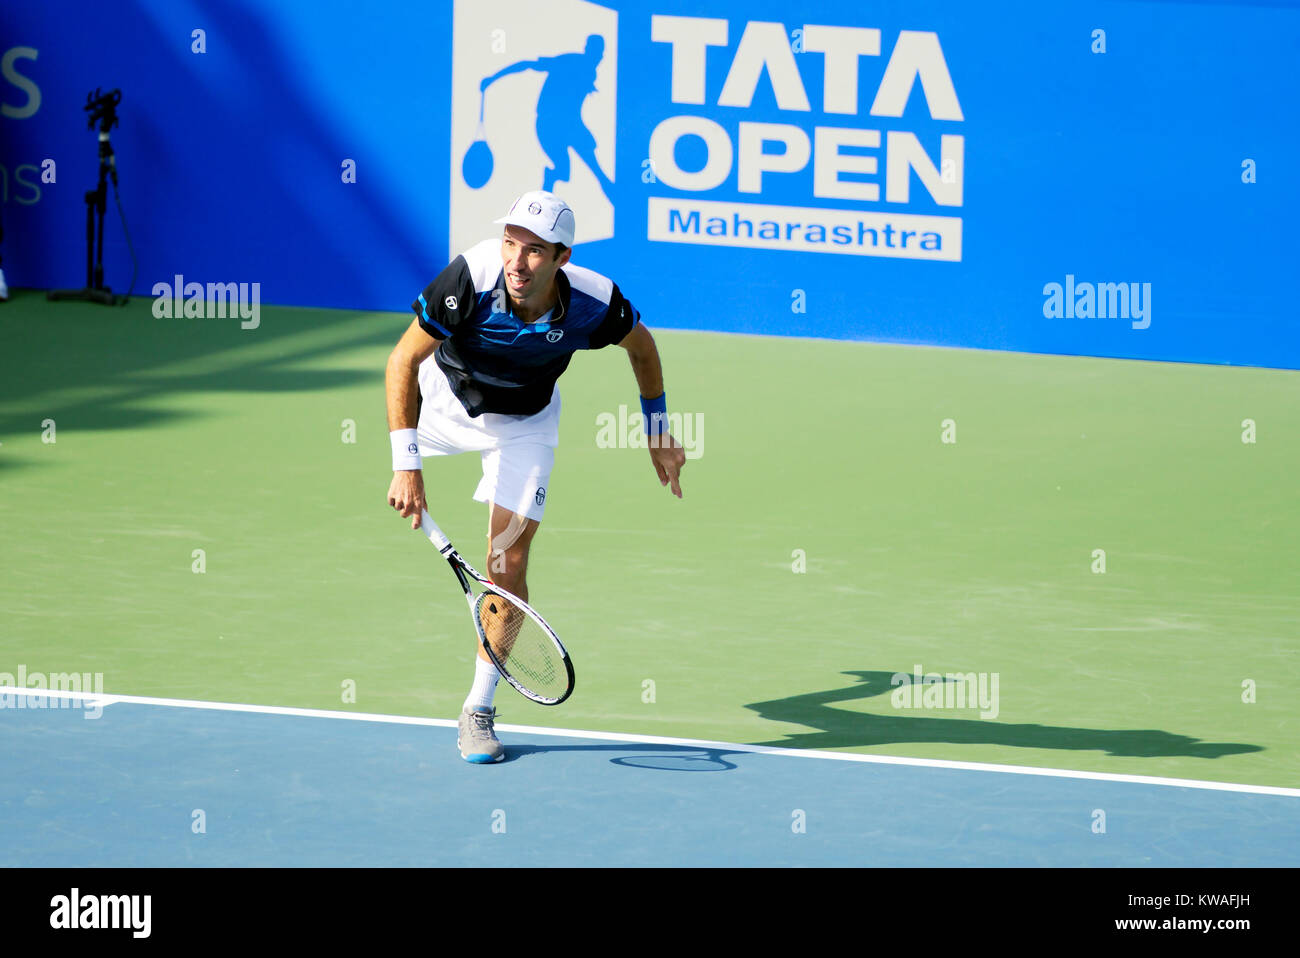 Pune, Inde. 1er janvier 2018. Mikhail Kukushkin du Kazakhstan en action dans la première série de Tata Ouvrir au Maharashtra Mahalunge Balewadi Tennis Stadium à Pune, en Inde. Credit : Karunesh Johri/Alamy Live News. Banque D'Images